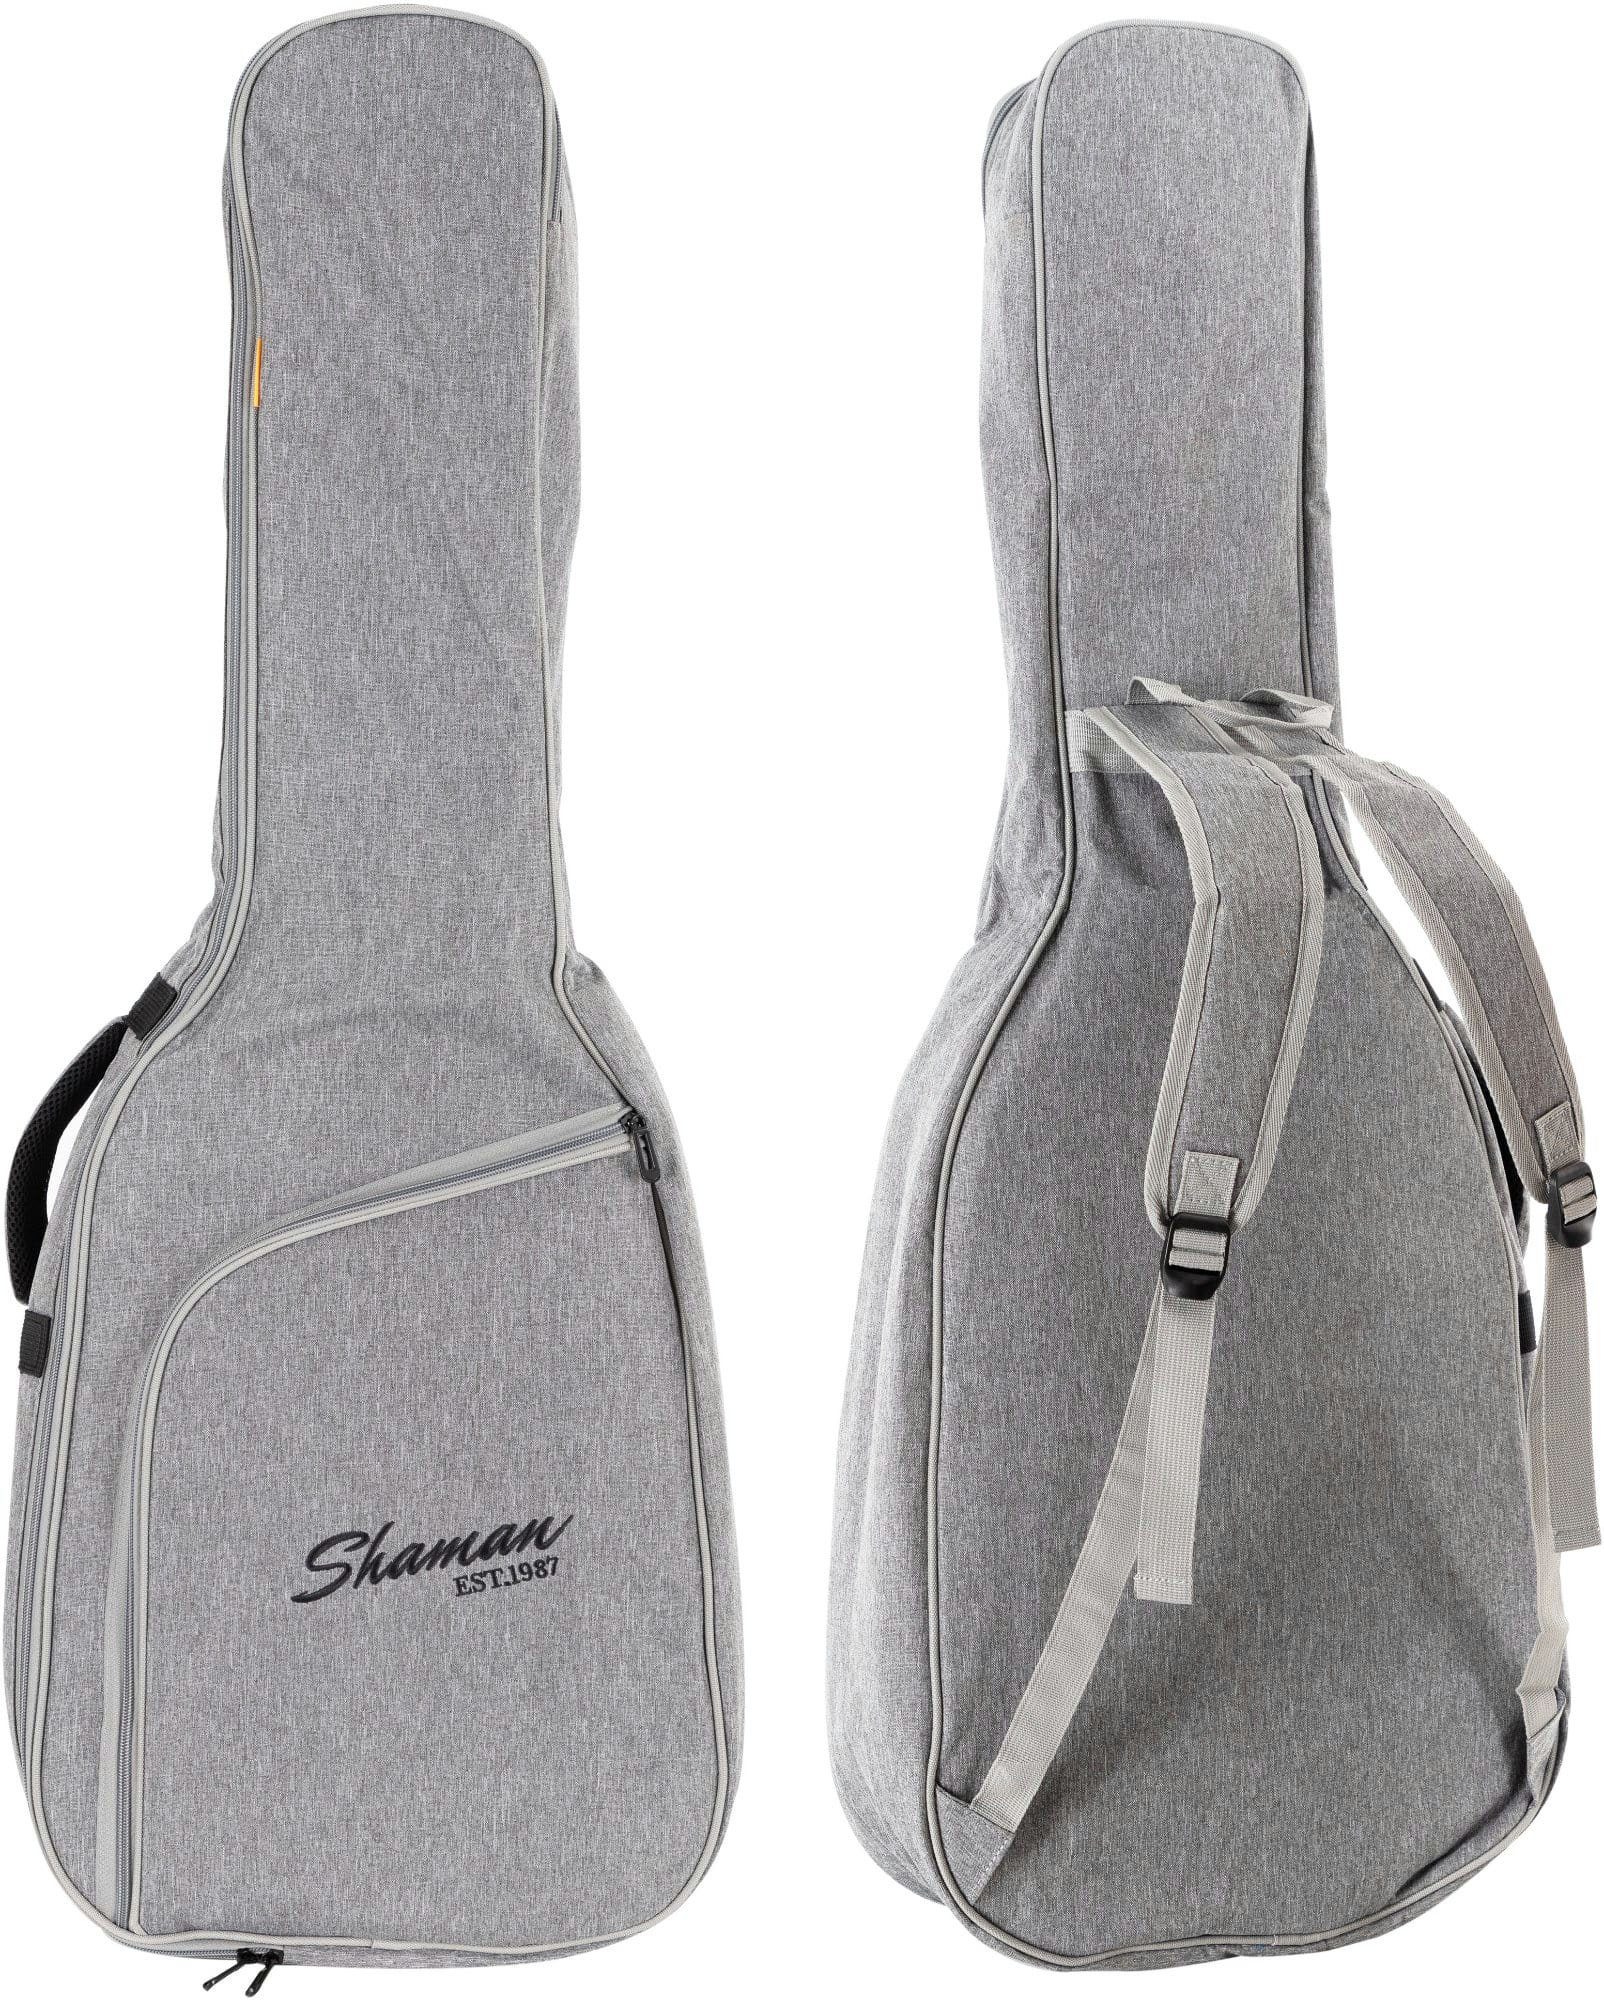 Shaman Gitarrentasche KGB-103 GY Premium-Line Konzertgitarrentasche Grau, Fixierung für Instrumentenhals & gepolsterte Rucksack-Gurte